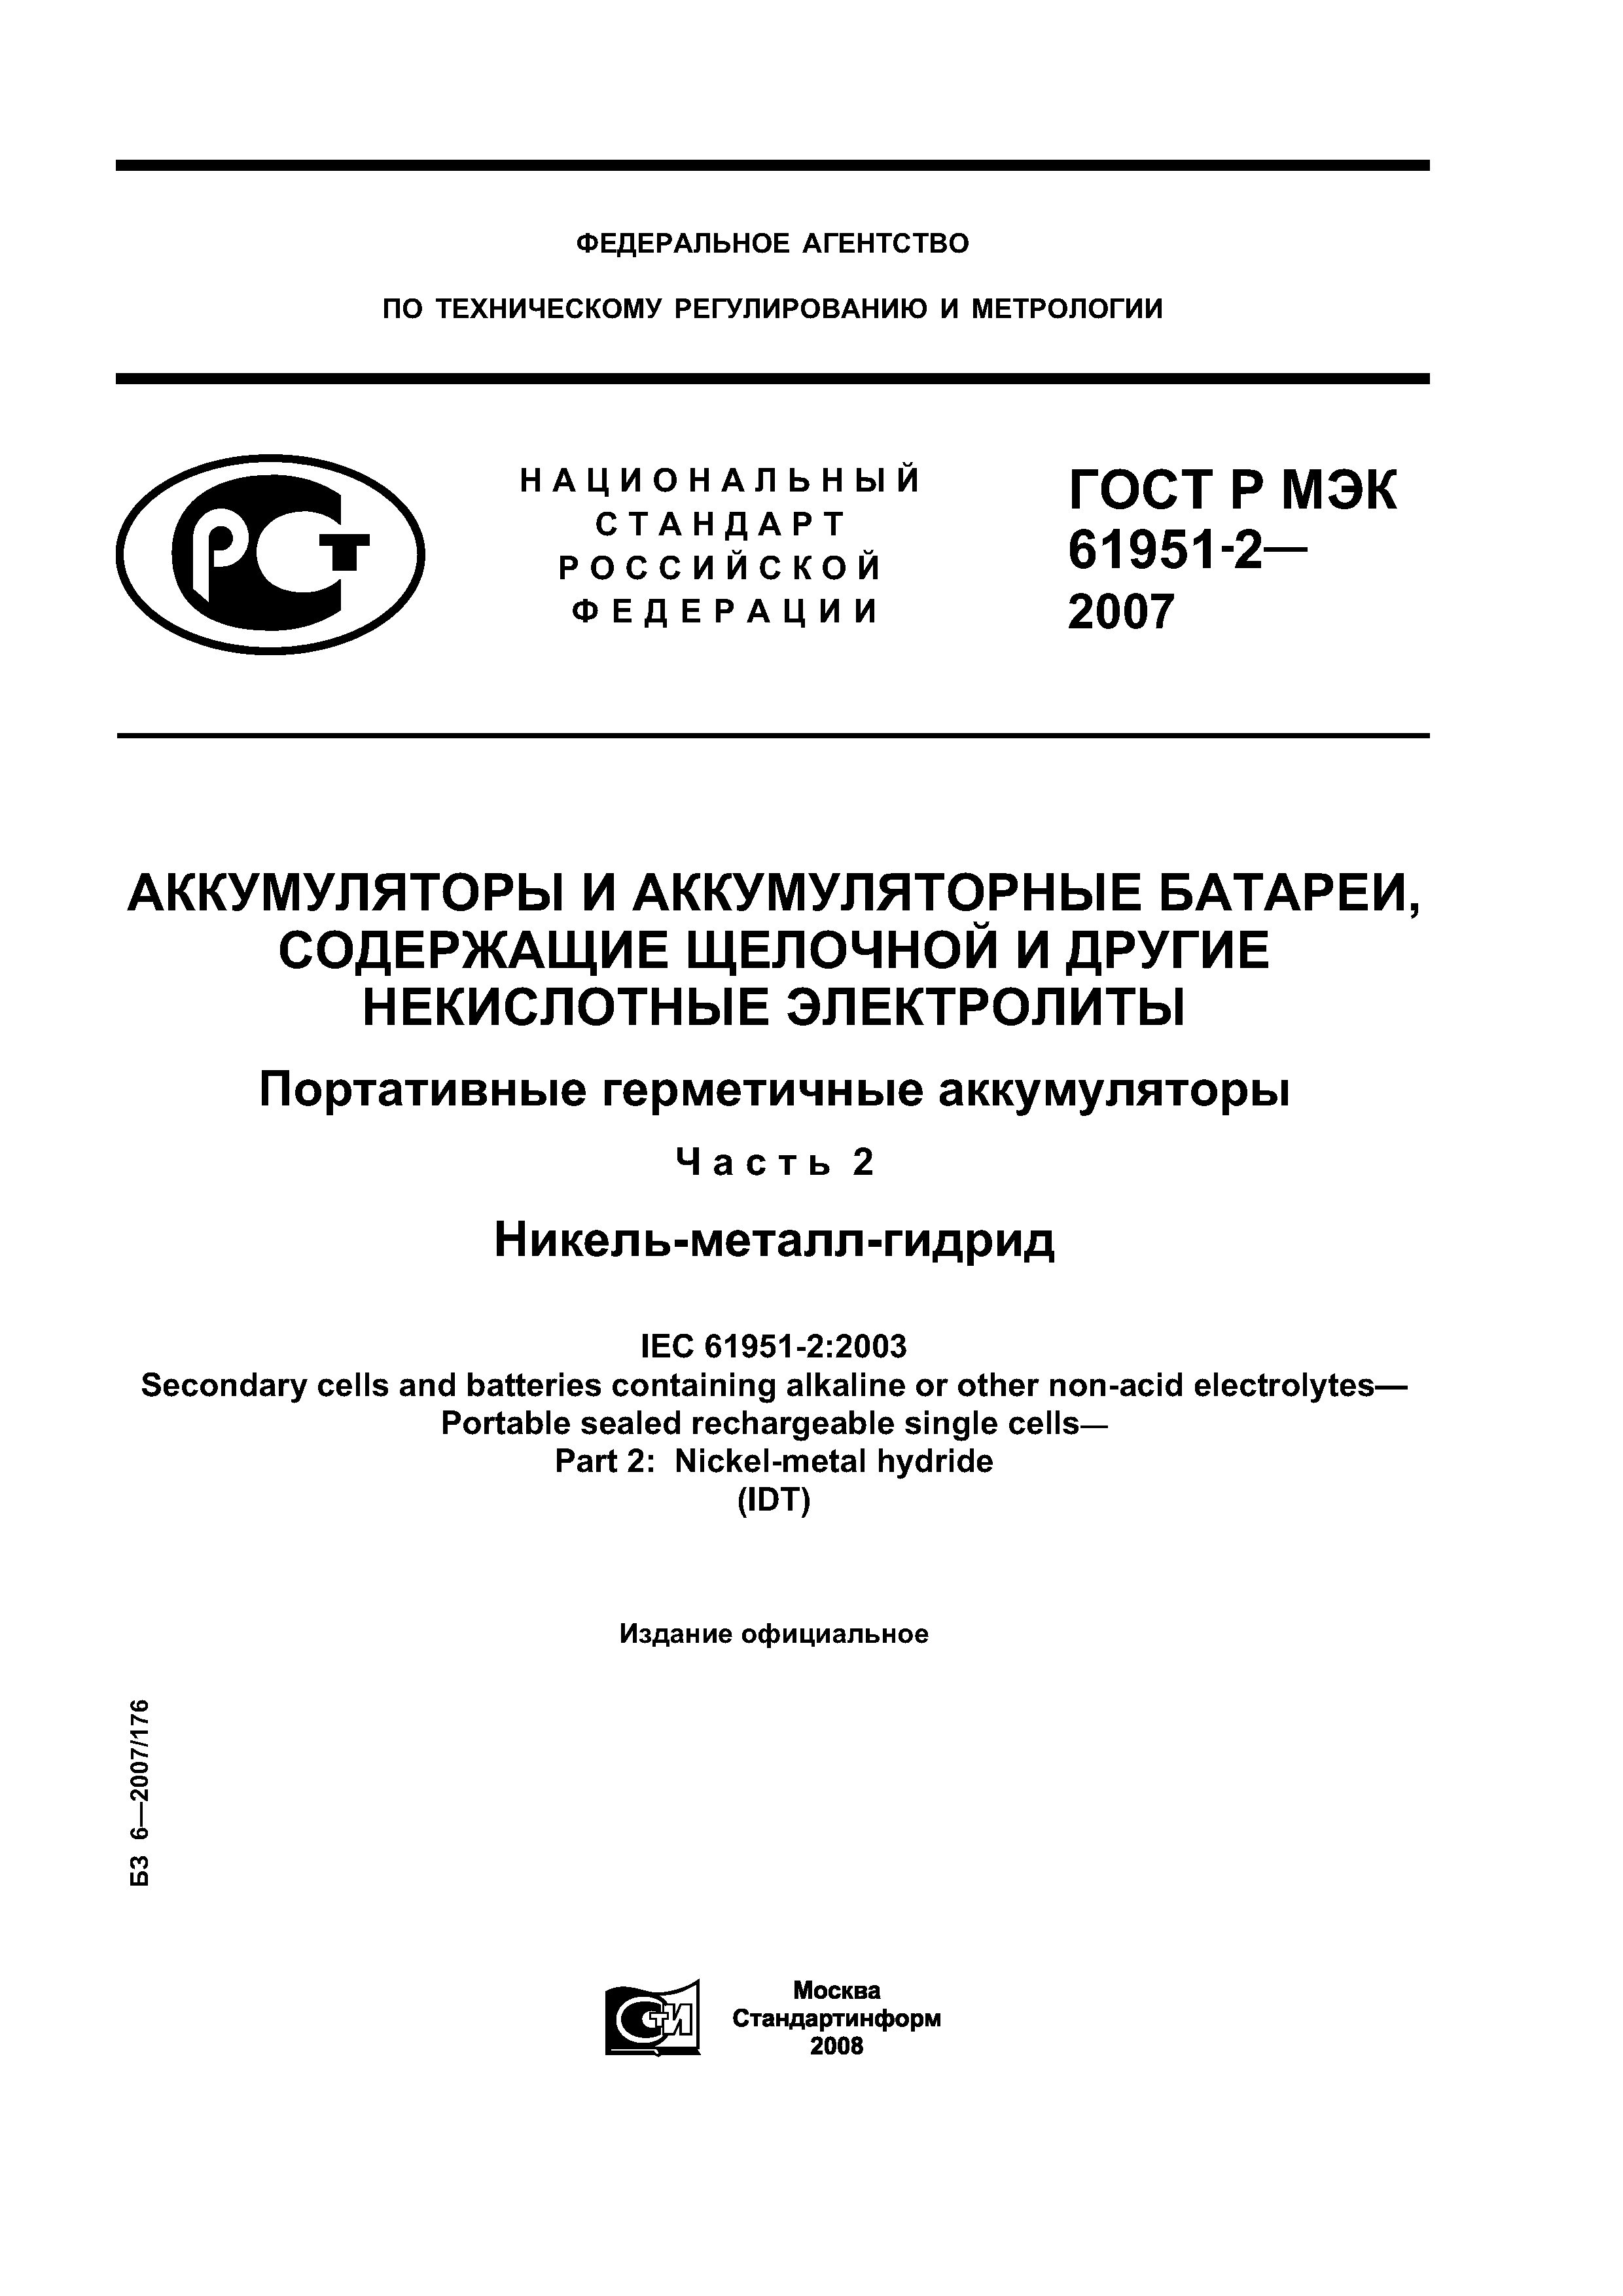 ГОСТ Р МЭК 61951-2-2007